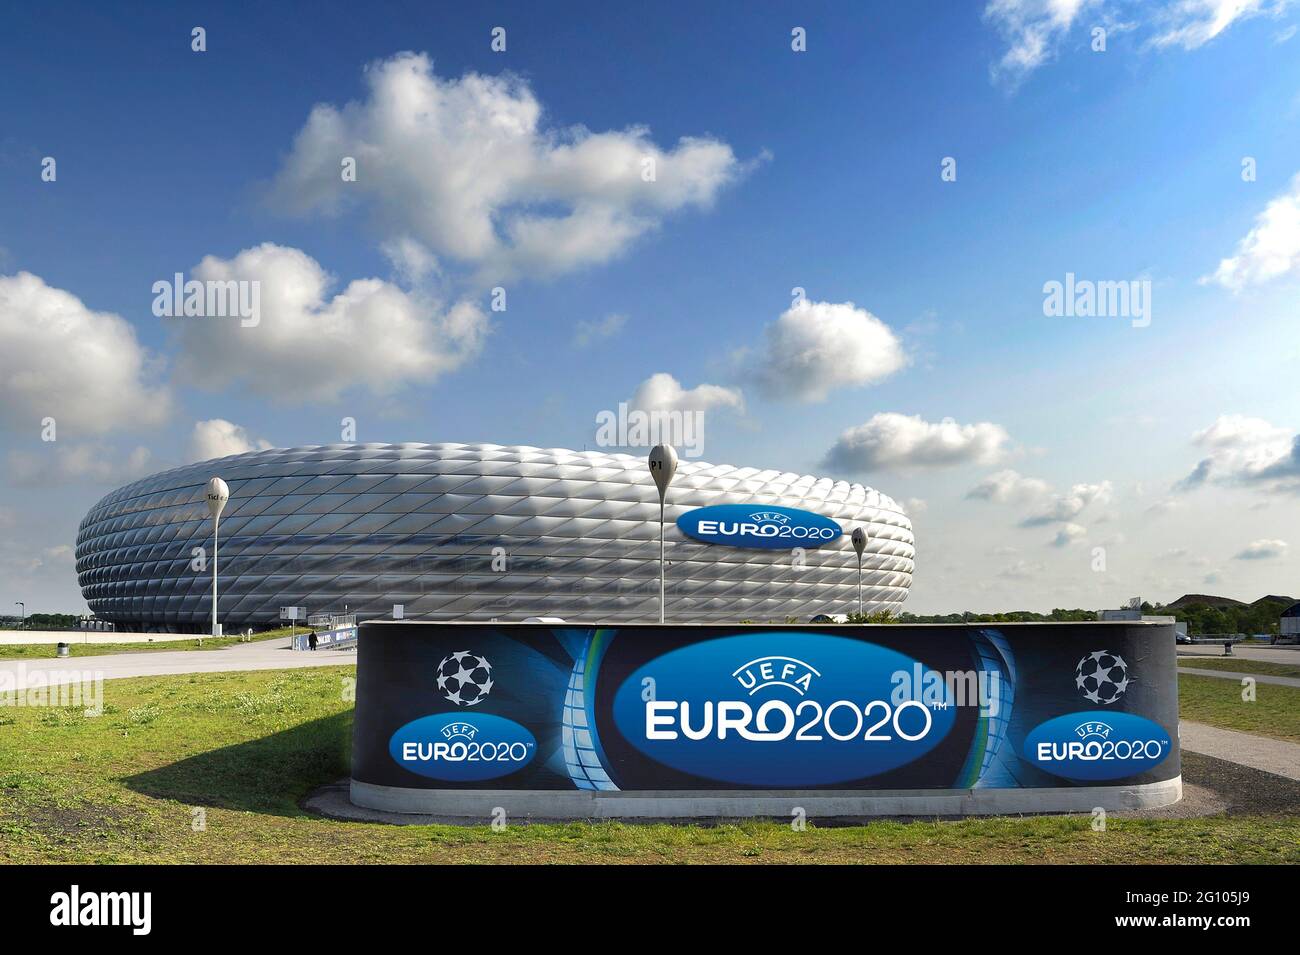 UEFA EURO 2020 à Munich avec des spectateurs ! Archiver photo :. L'EURO 2020 intervient après Munich. Muenchen est l'un des 13 sites pour le Championnat d'Europe 2020. C'est ce que l'Association européenne de football UEFA a annoncé vendredi à Genève. Dans l'Allianz Arena, trois matchs préliminaires et un quart de finale seront disputés dans six ans. PHOTOMONTAGE, archive photo: ALLIANZ ARENA in the Evening Sky, football Arena, stade de football, stade, FC Bayern Munich, crépuscule, crépuscule, projecteur de source, éclairage blanc, lumineux blanc, Lumière, humeur, ambiance du soir, présentation, prise de vue longue, architecture. Â Banque D'Images